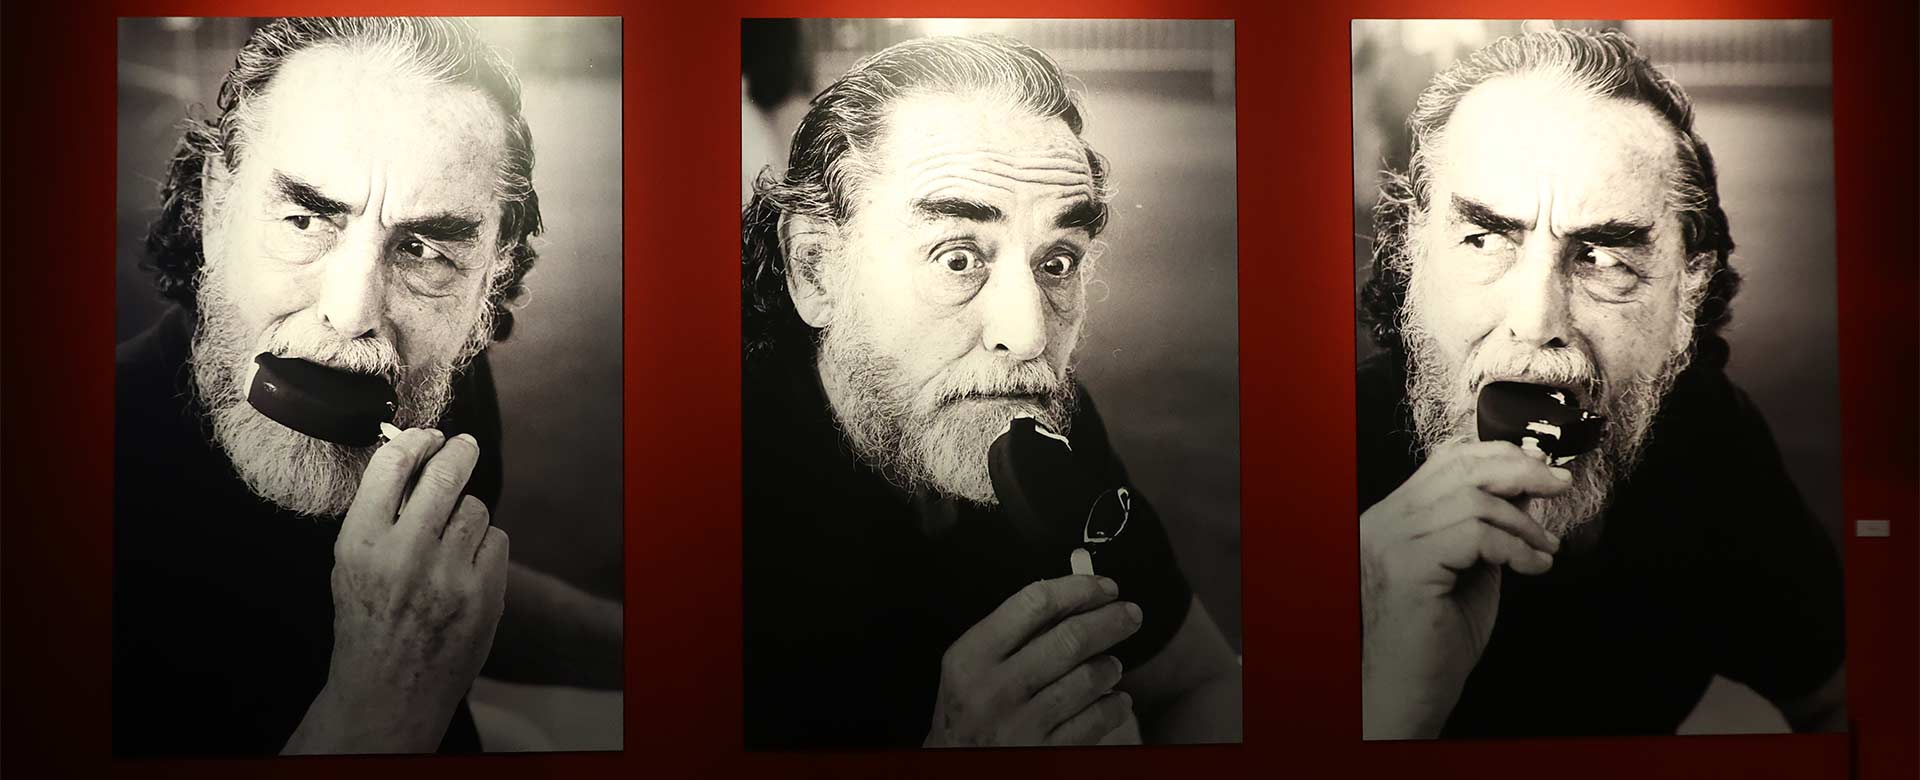 Tre scatti di Vittorio Gassman sono parte dell'allestimento della mostra Vittorio Gassman. Il centenario, all'Auditorium Parco della Musica di Roma fino al 29 giugno